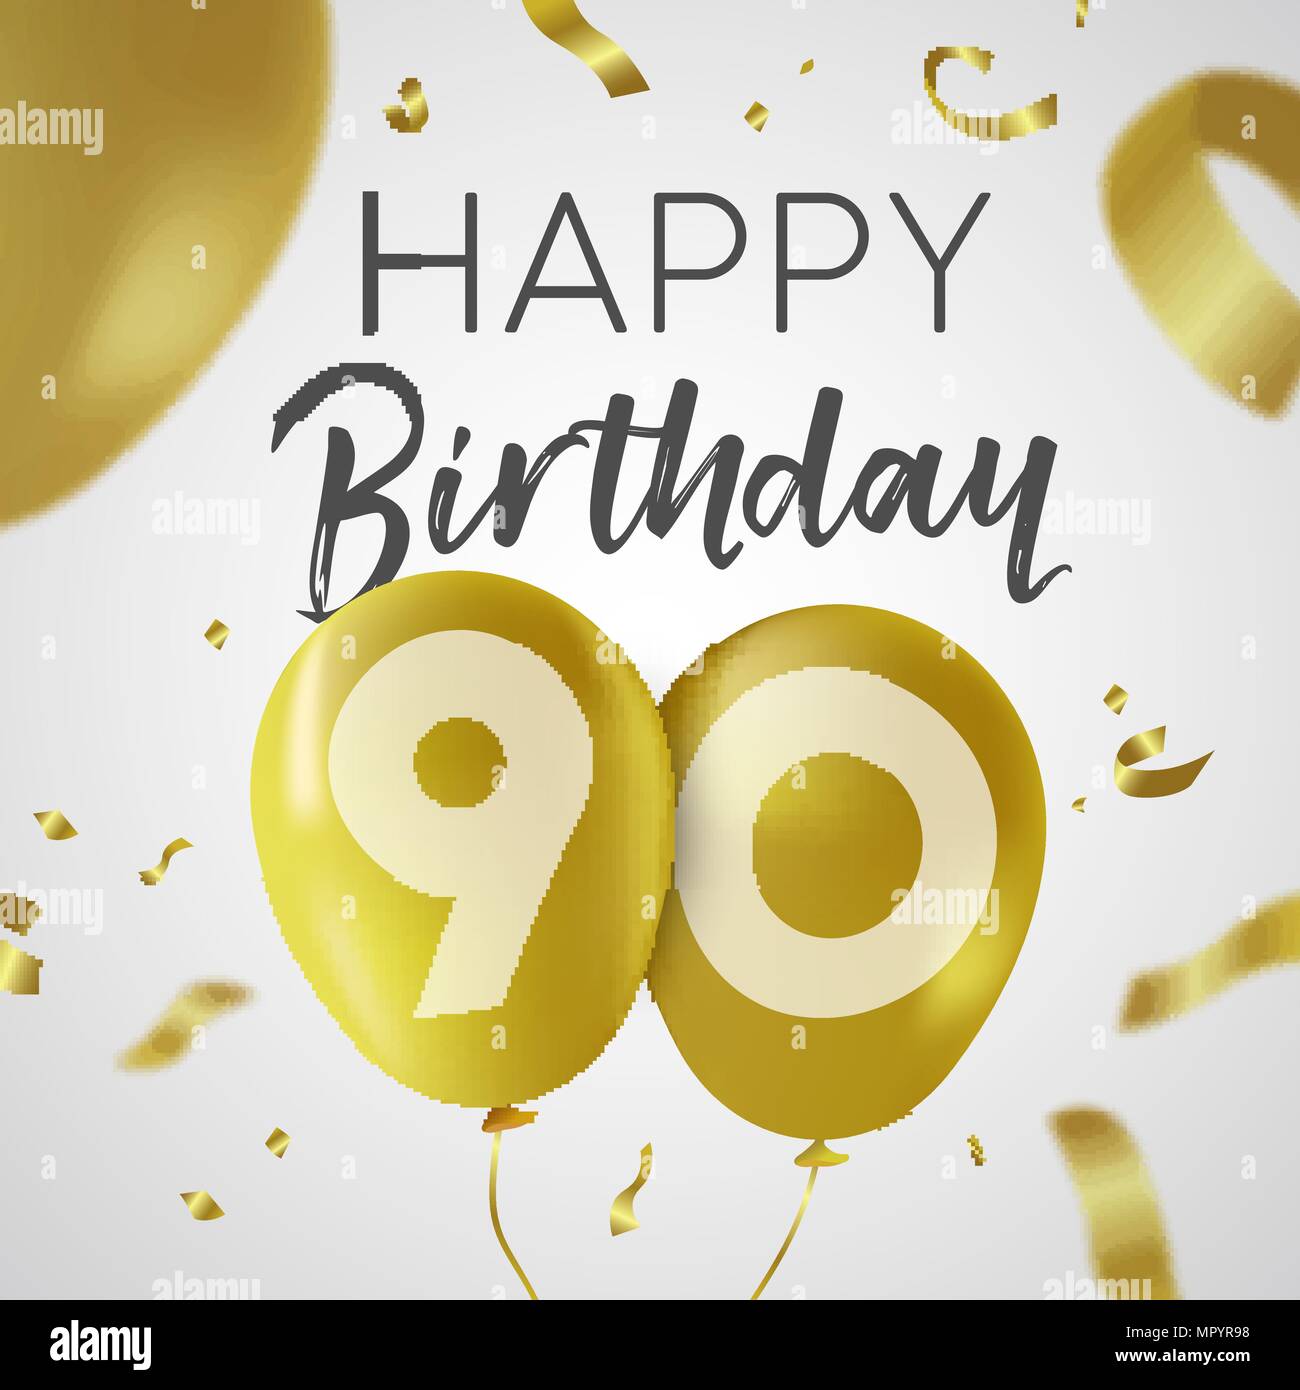 Happy Birthday 90 neunzig Jahre Luxus Design mit Gold Ballon Anzahl und golden Konfetti Dekoration. Ideal für Party Einladung oder Grußkarte. EP Stock Vektor